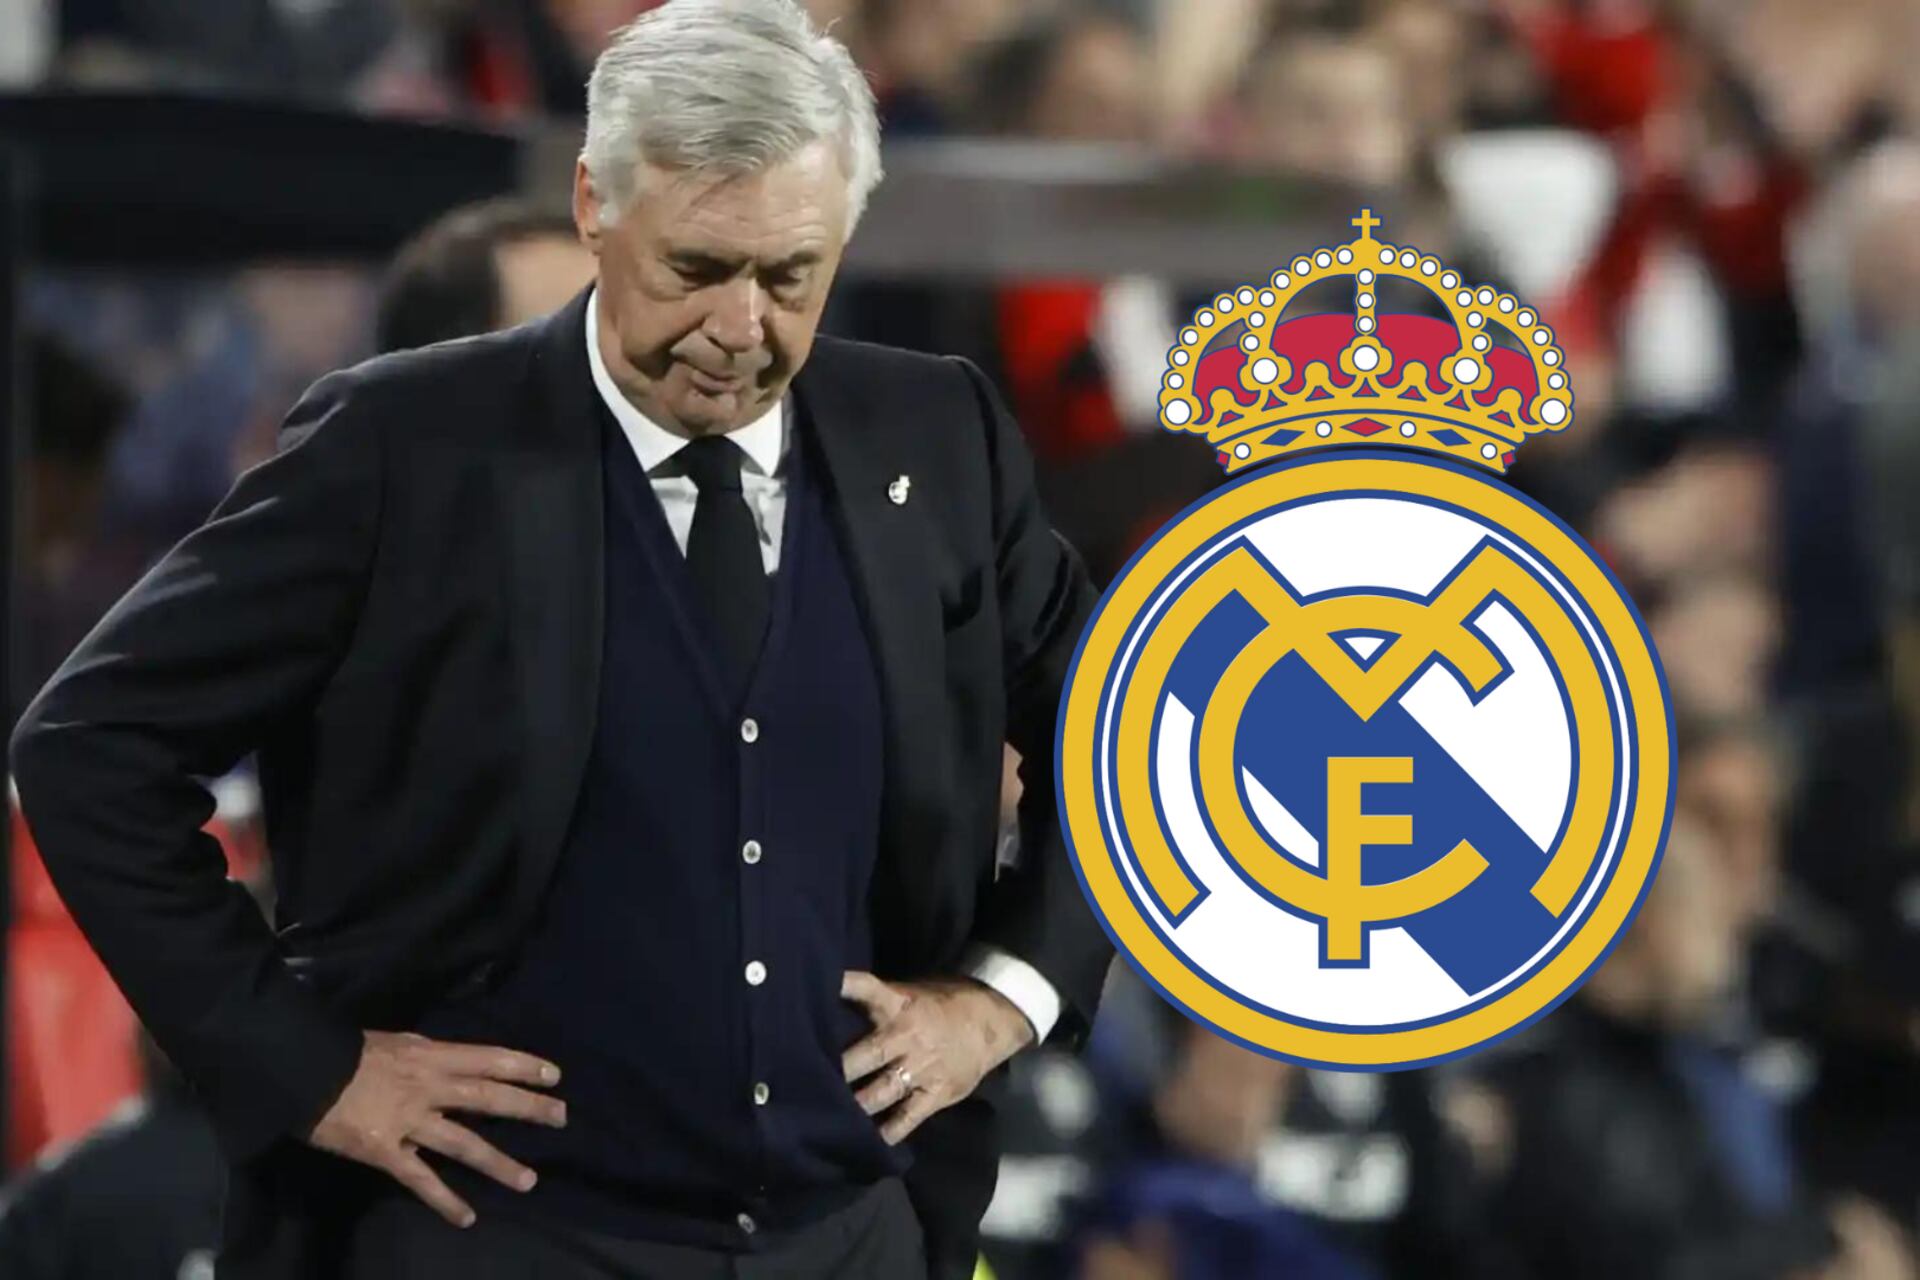 Adiós al Real Madrid, el líder de vestuario que perderá Ancelotti al final de temporada